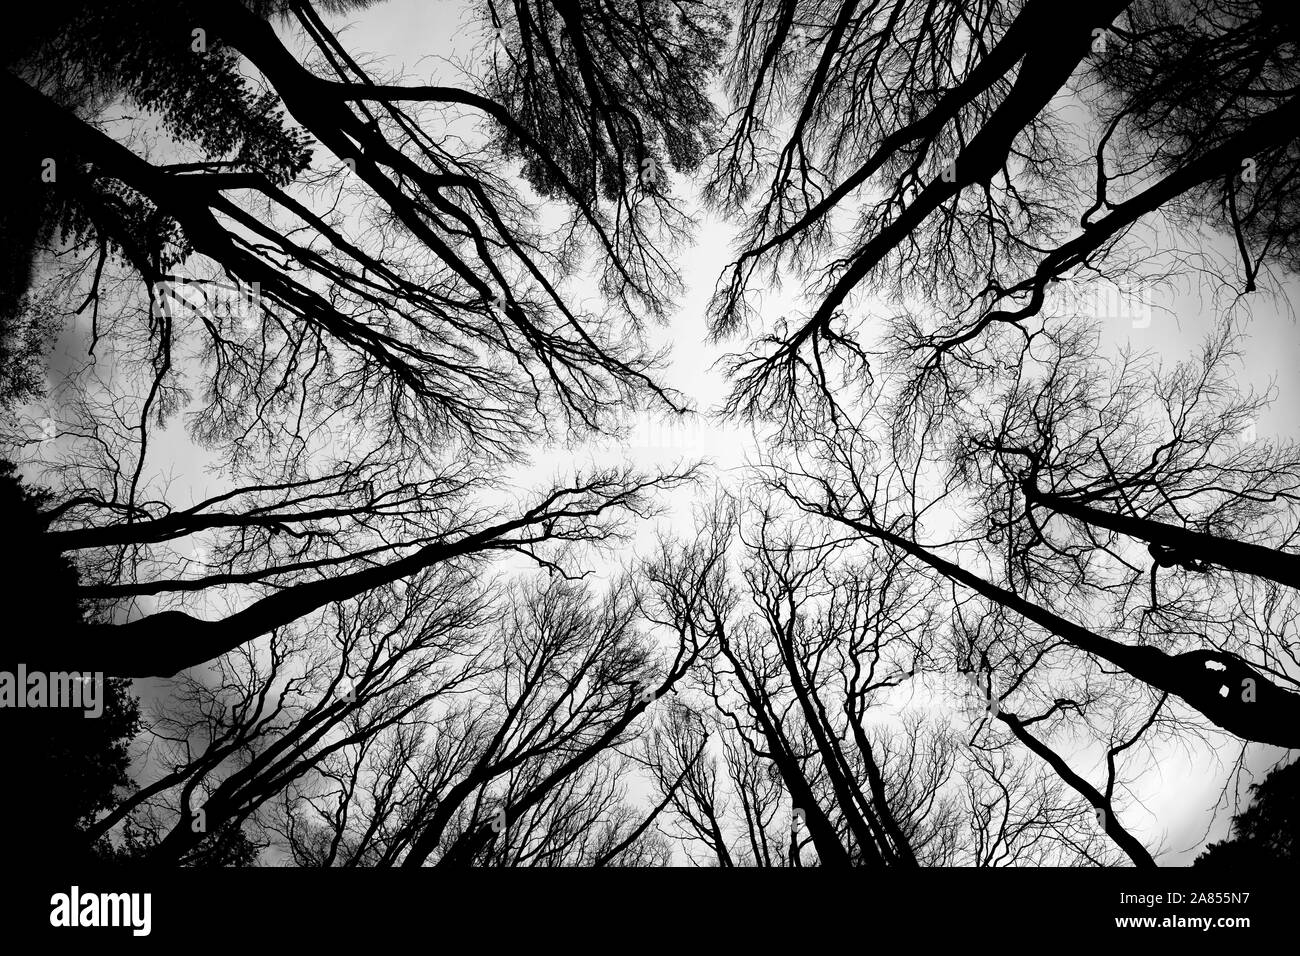 Weitwinkel fisheye objektiv Foto vom Boden bis zur Oberkante der Wald mit Bäumen und trockenen Zweigen. Stockfoto